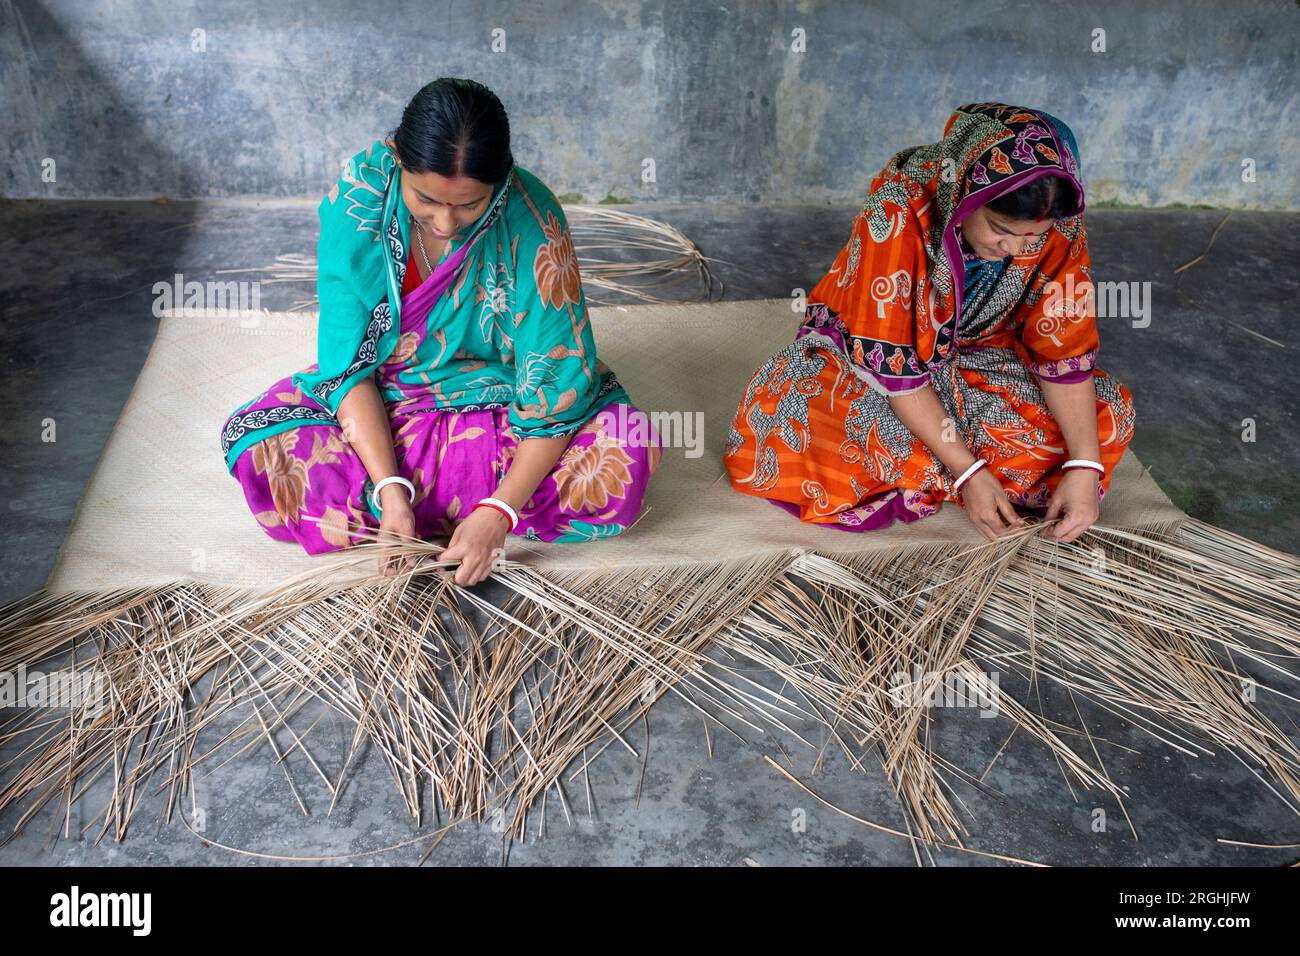 In ihrem Zuhause im Dorf Hailakathi in Rajapur upazila, dem Dorf Jhalakathi, weben Frauen traditionelle Sit-Verstecke (coole Matte). Jhalakathi, Bangladesch Stockfoto